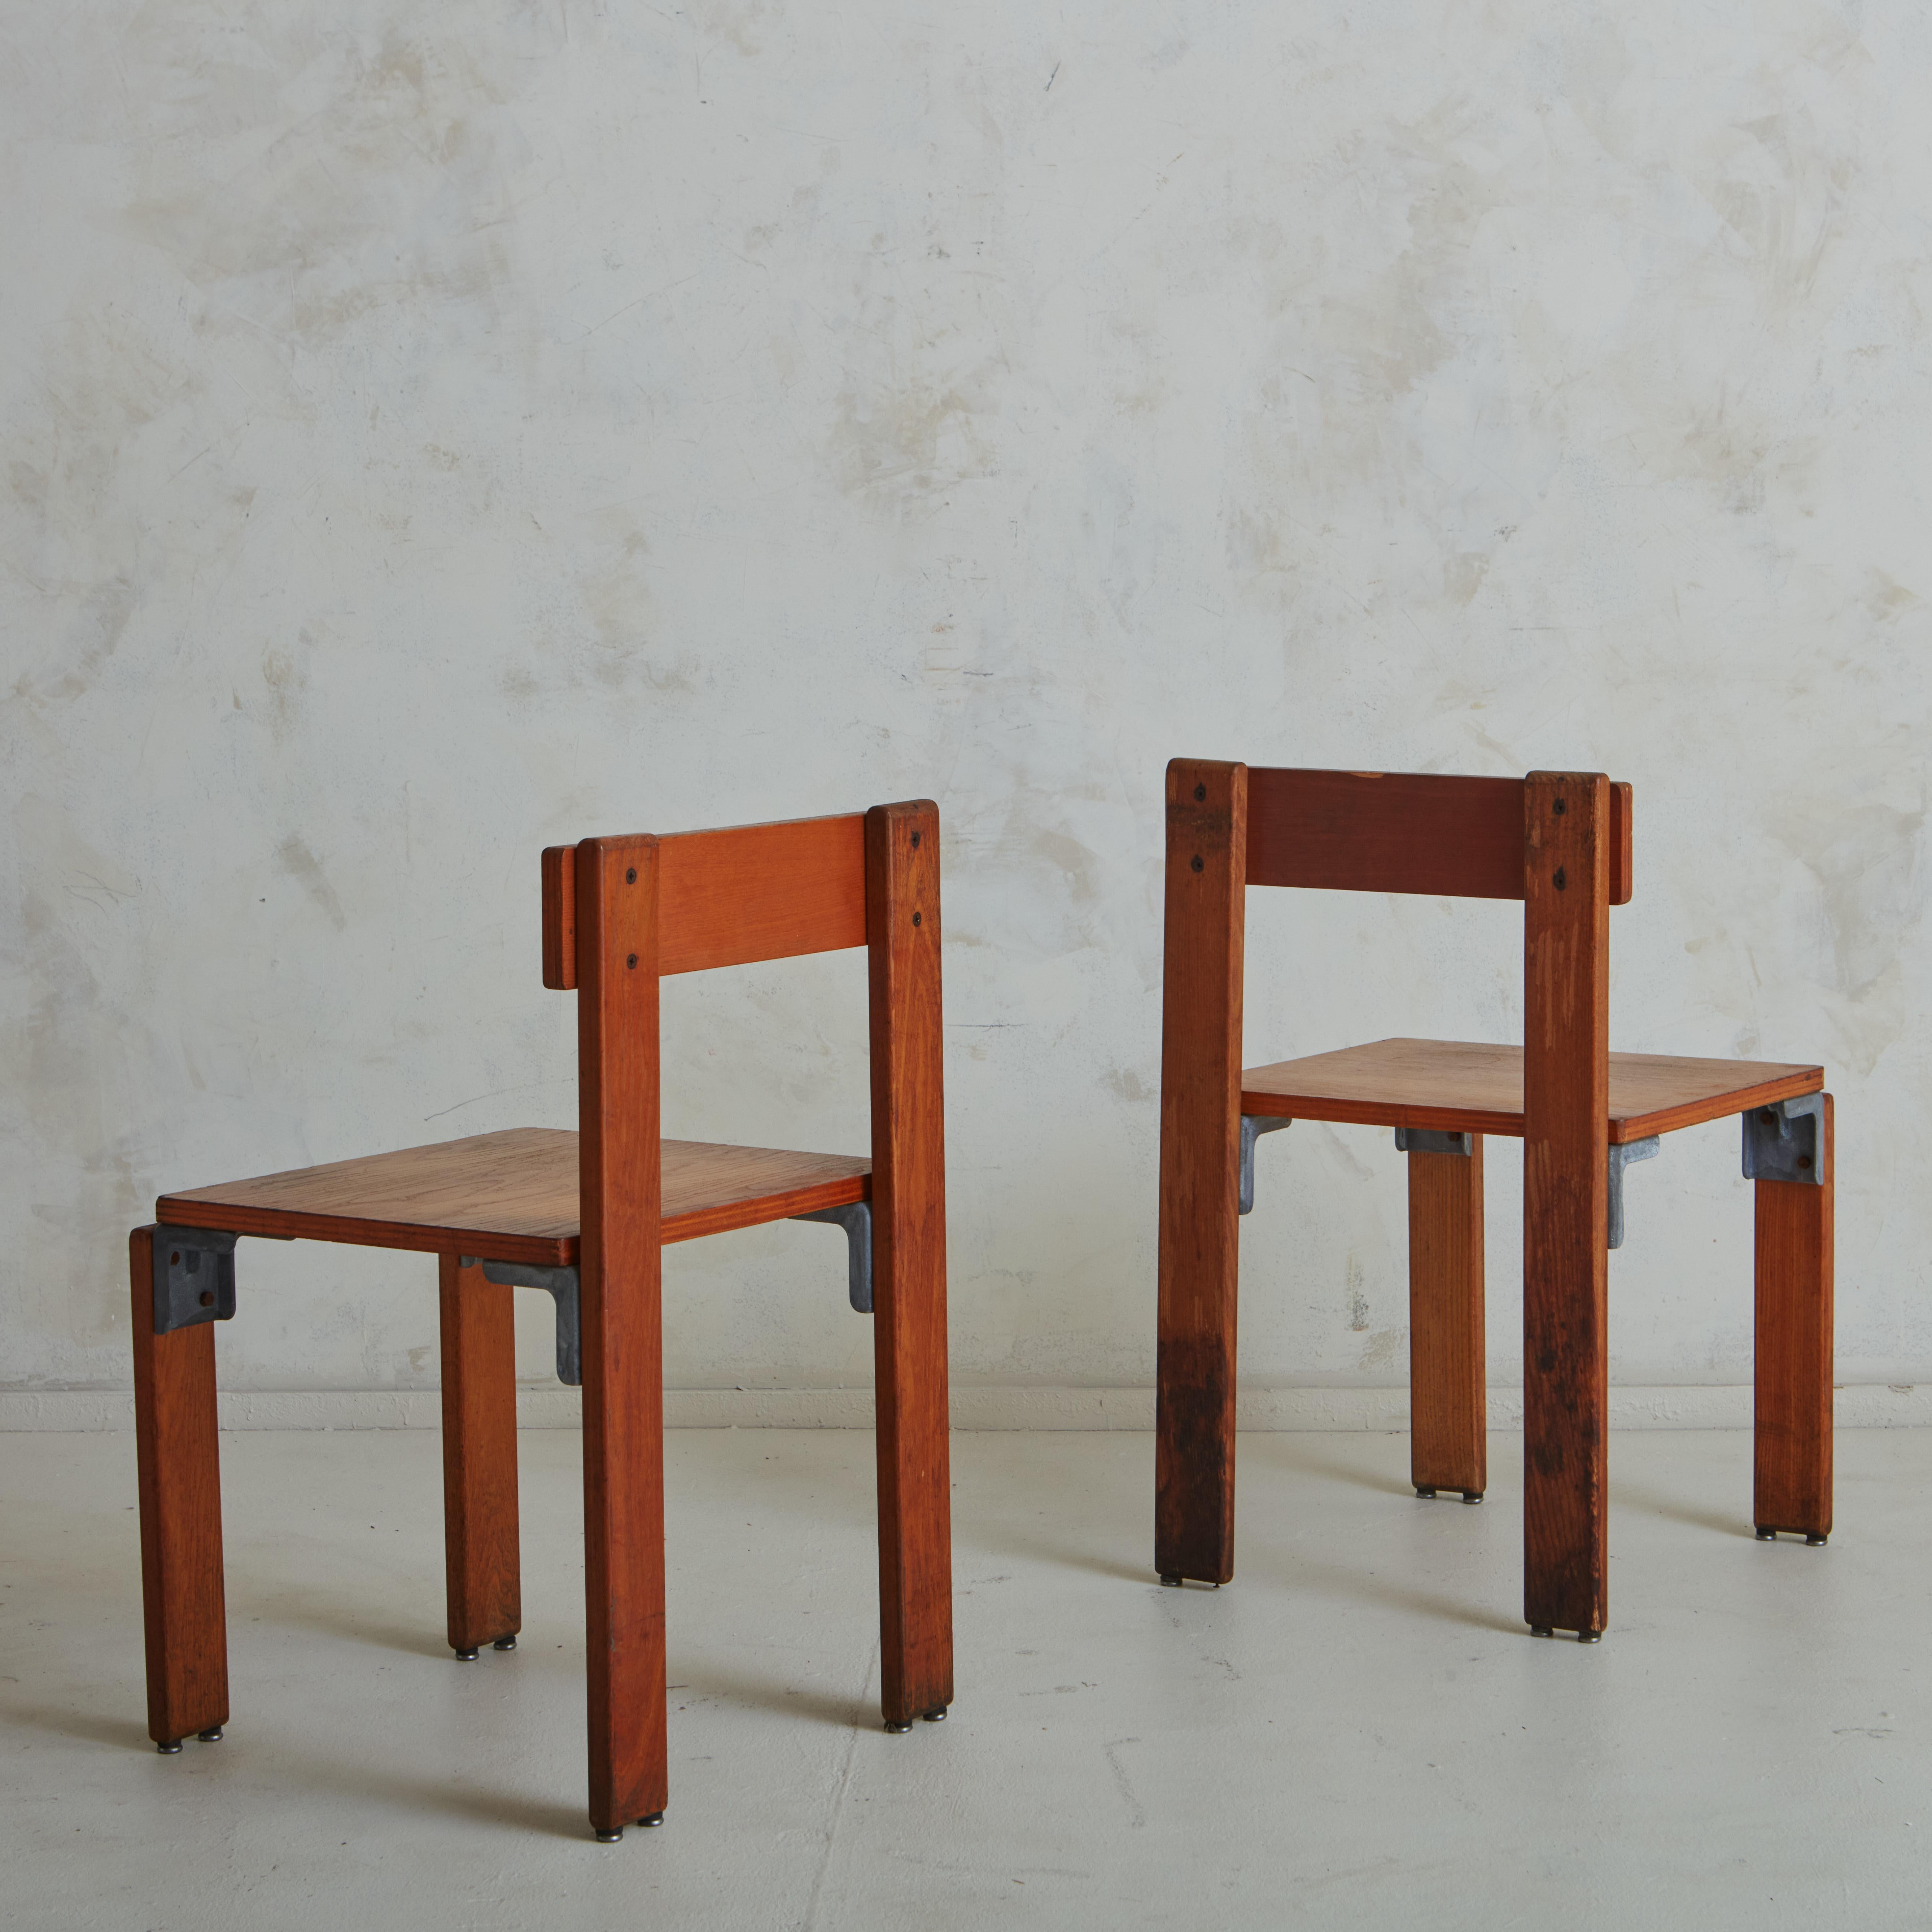 Ein Paar Stühle, entworfen von George Candilis und der finnischen Innenarchitektin Anja Blomstedt für ein Ferienmöbel-Set, das die Gestaltung des Feriendorfs Carrats vervollständigt. Das Projekt der Architekten Georges Candilis (1913-1995), Georges